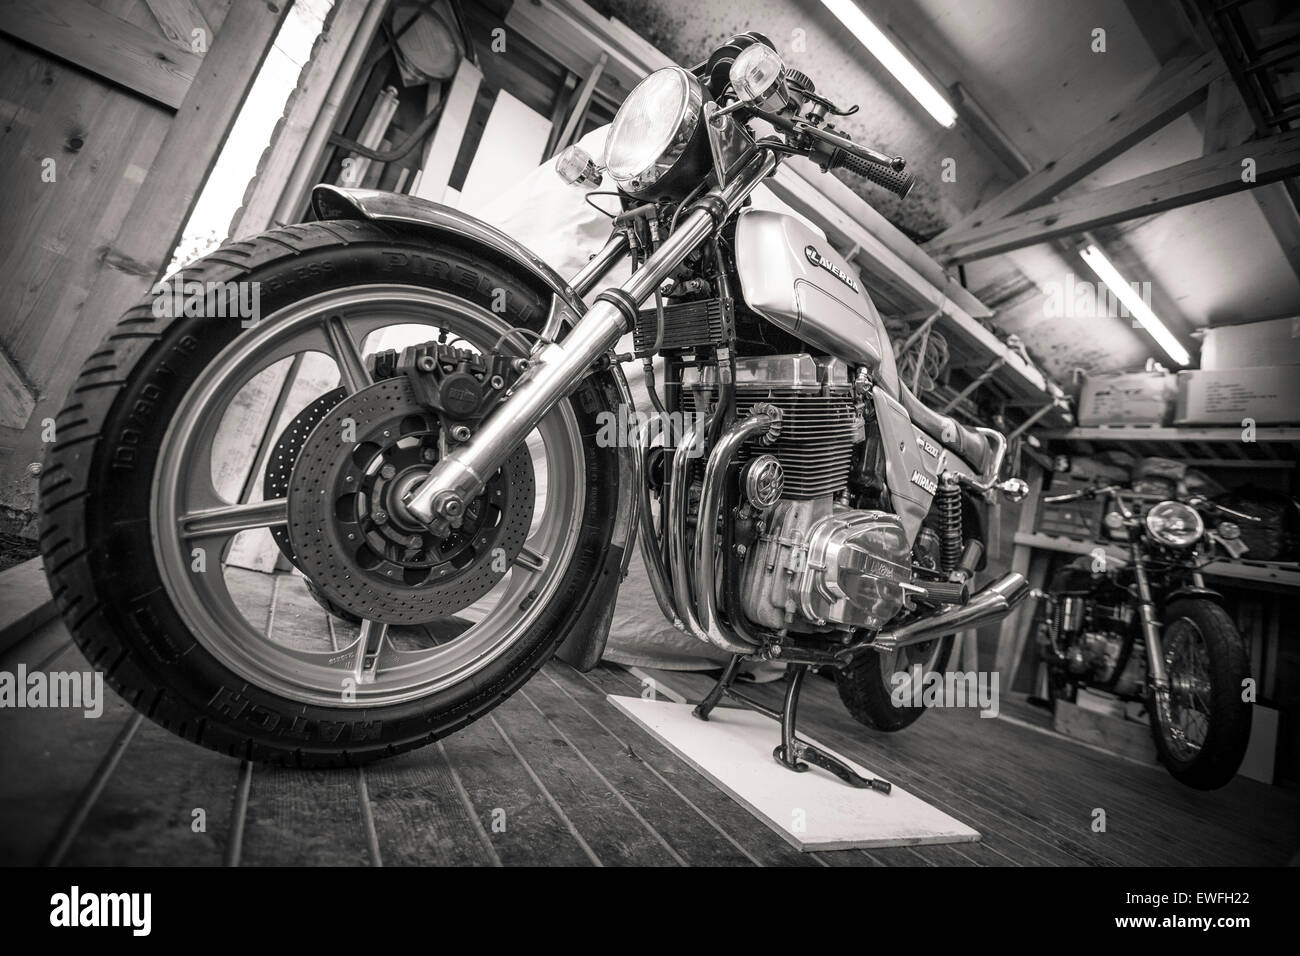 Laverda motociclo classico Foto Stock